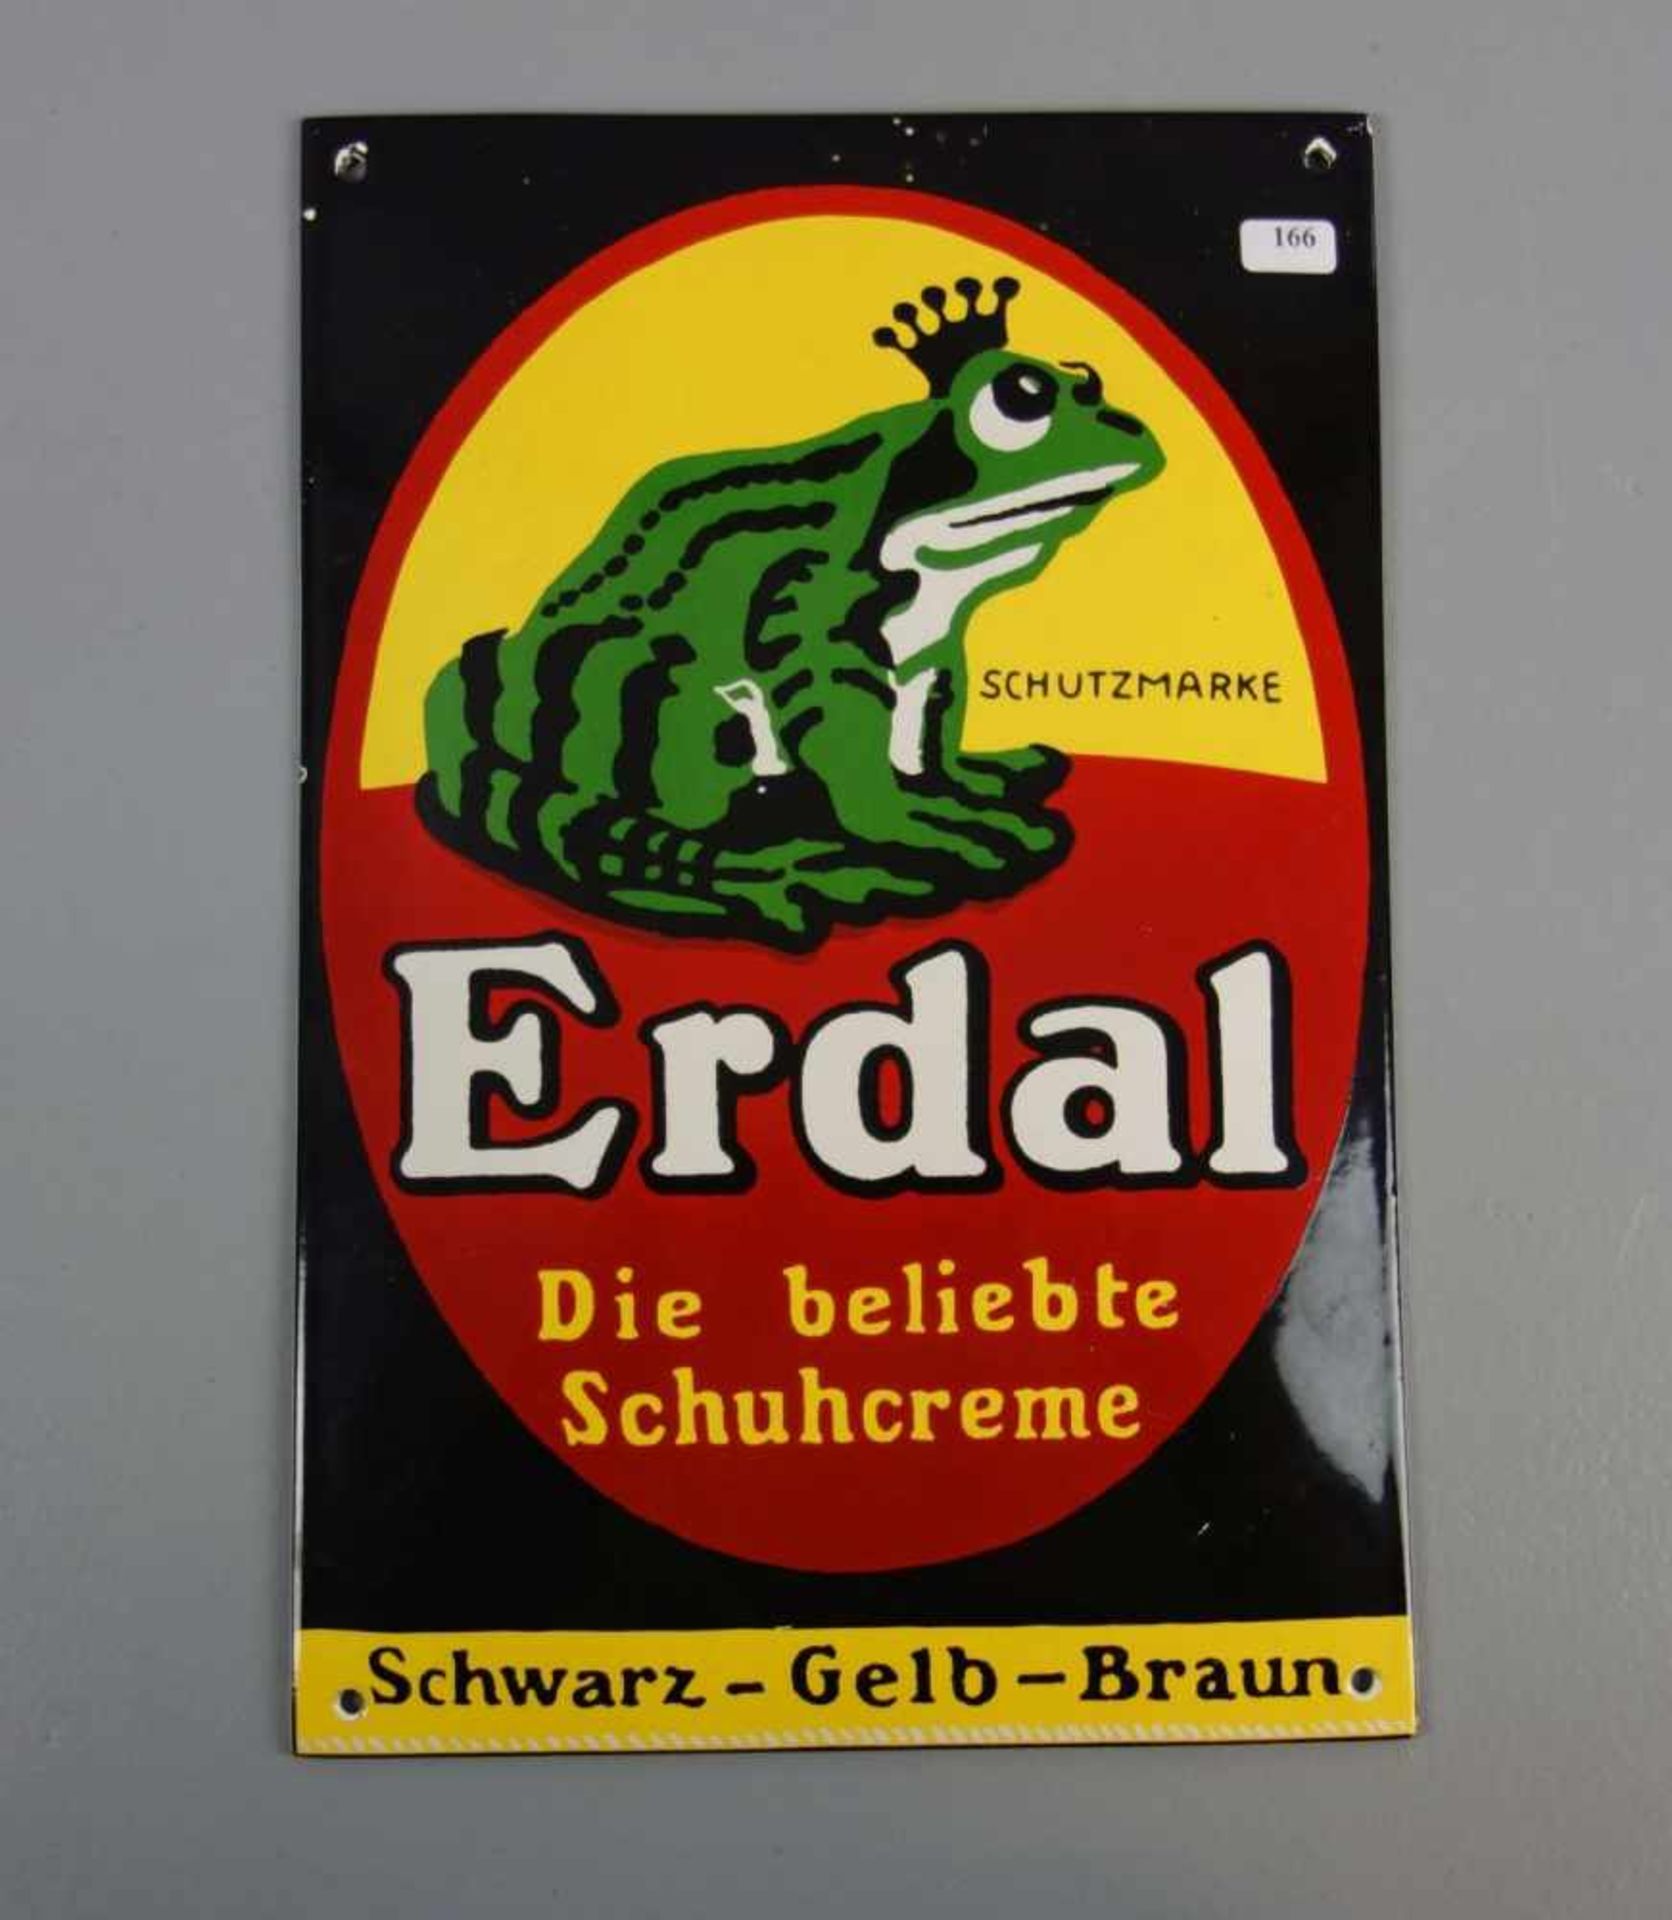 EMAILLESCHILD / BLECHSCHILD / WERBESCHILD "Erdal Schuhcreme". Rechteckiges und leicht aufgewölbtes